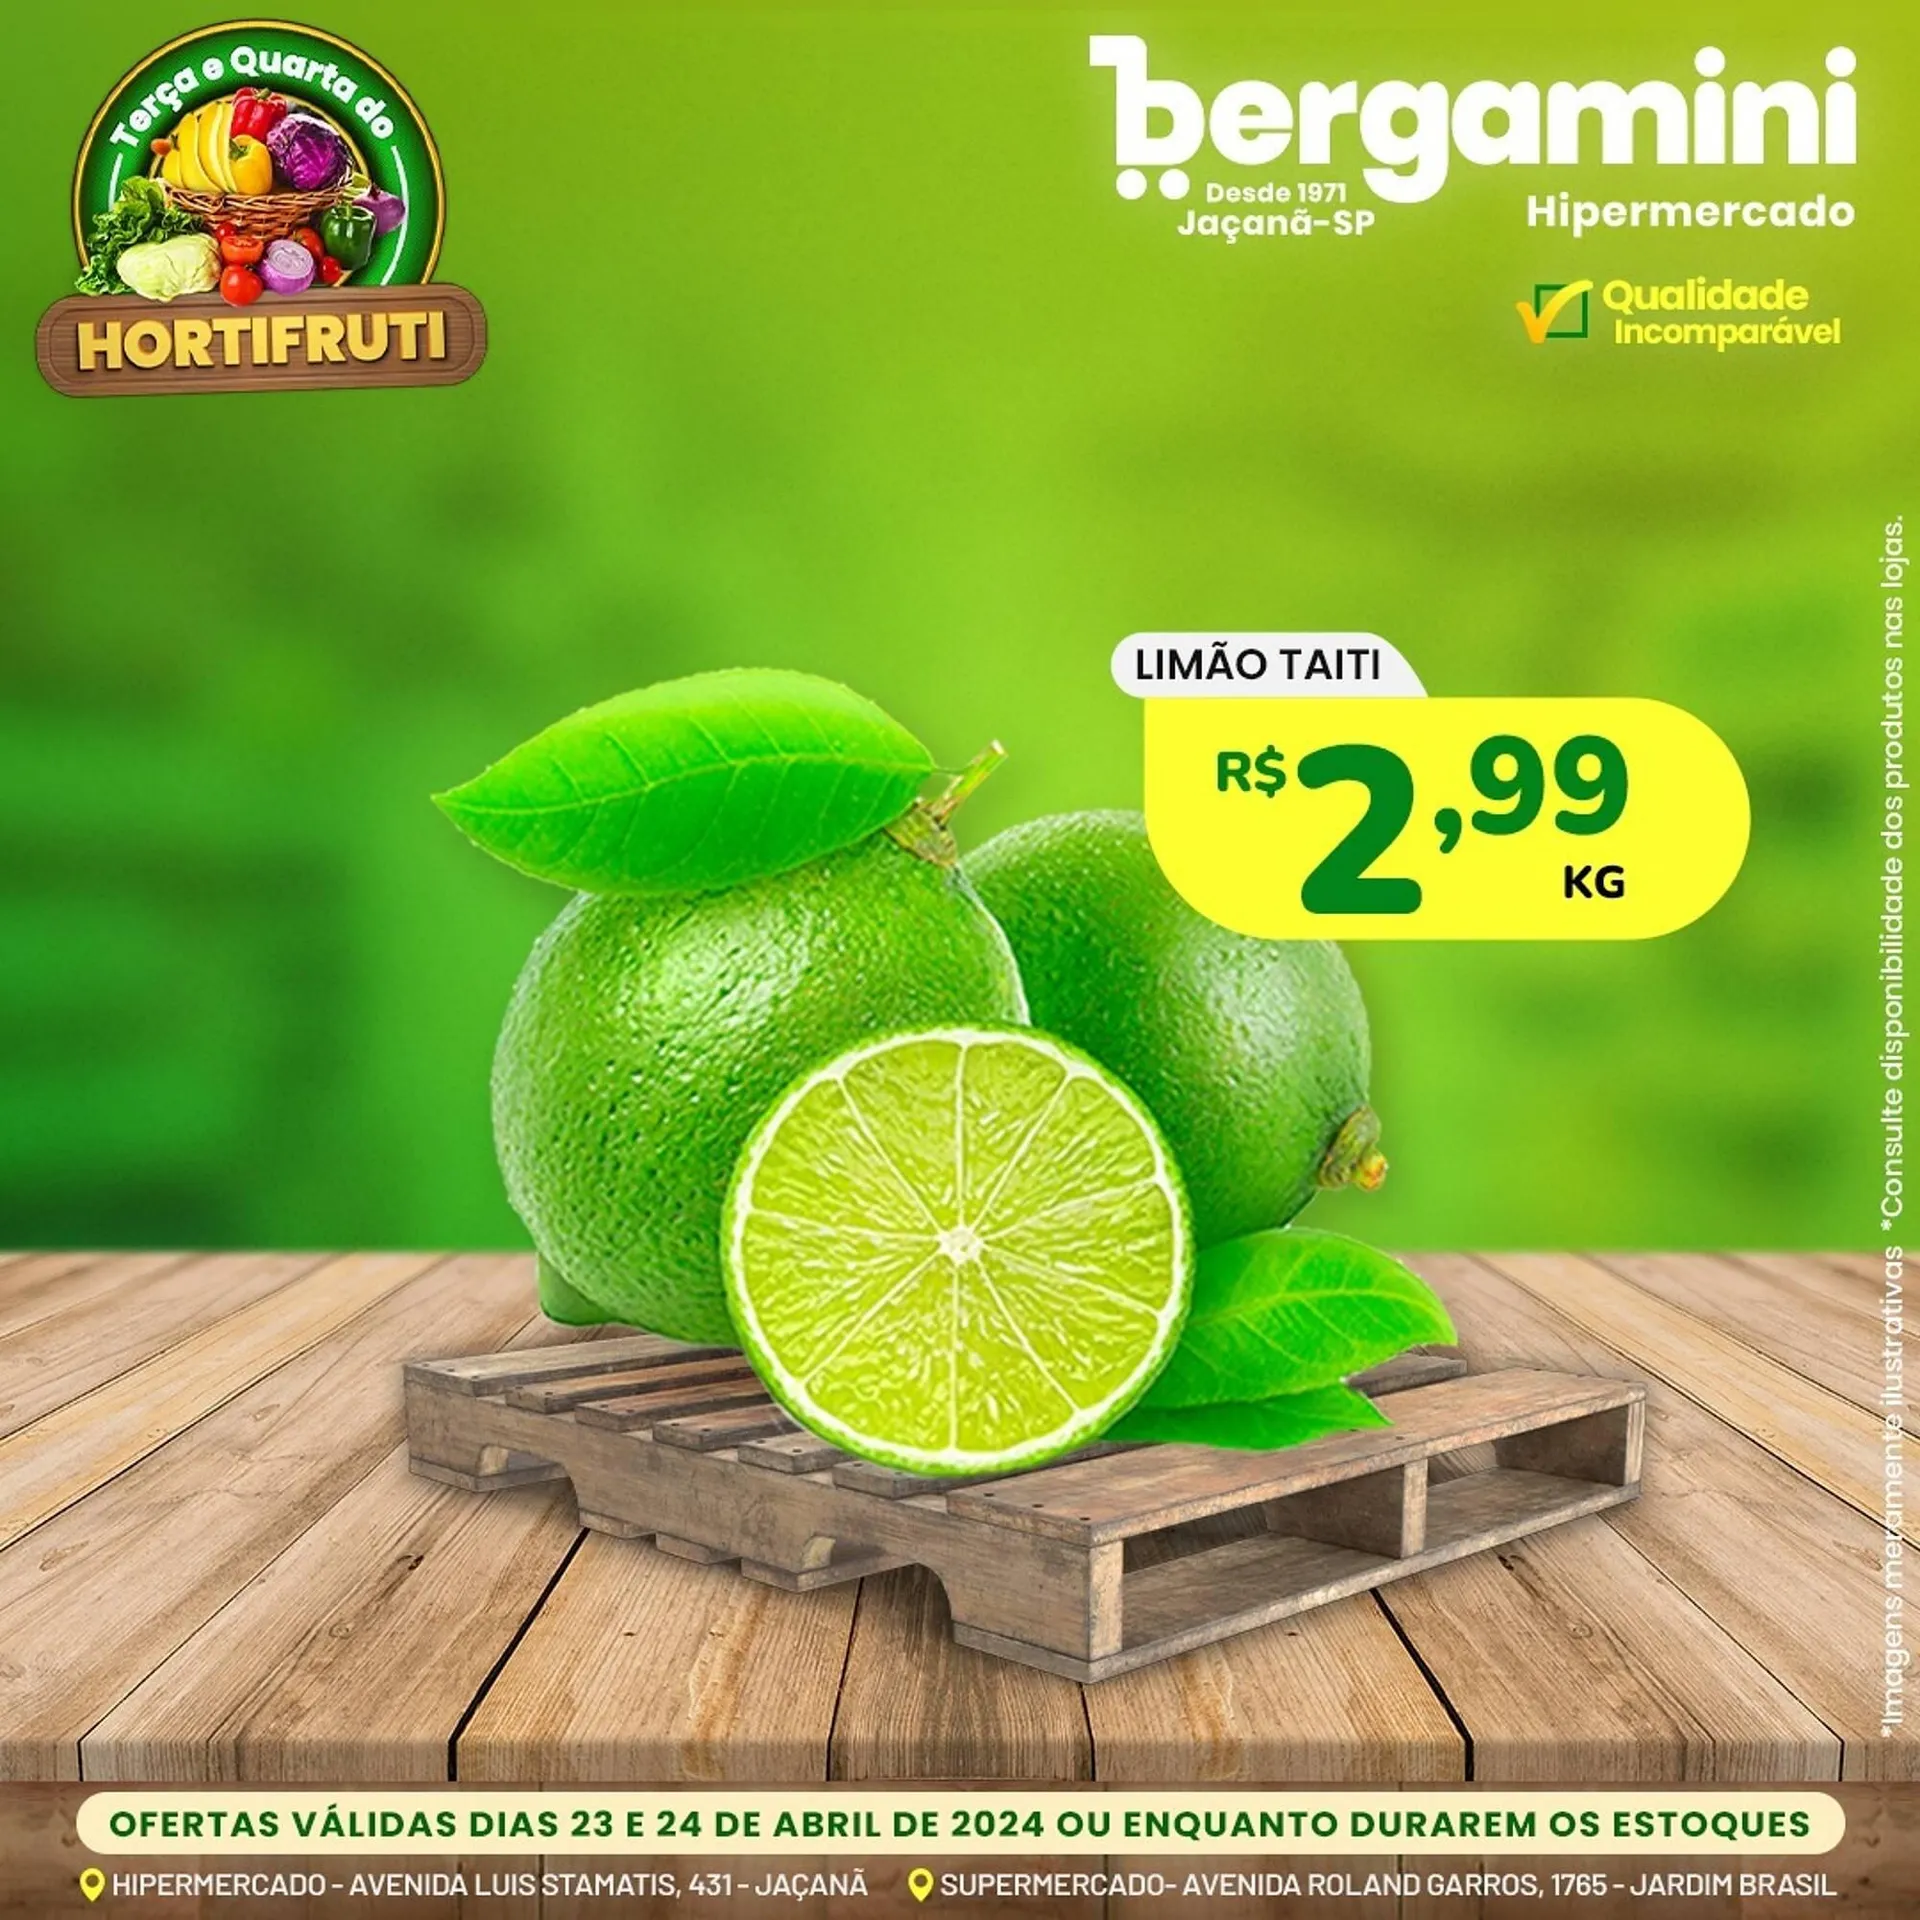 Catálogo Supermercado Bergamini - 2